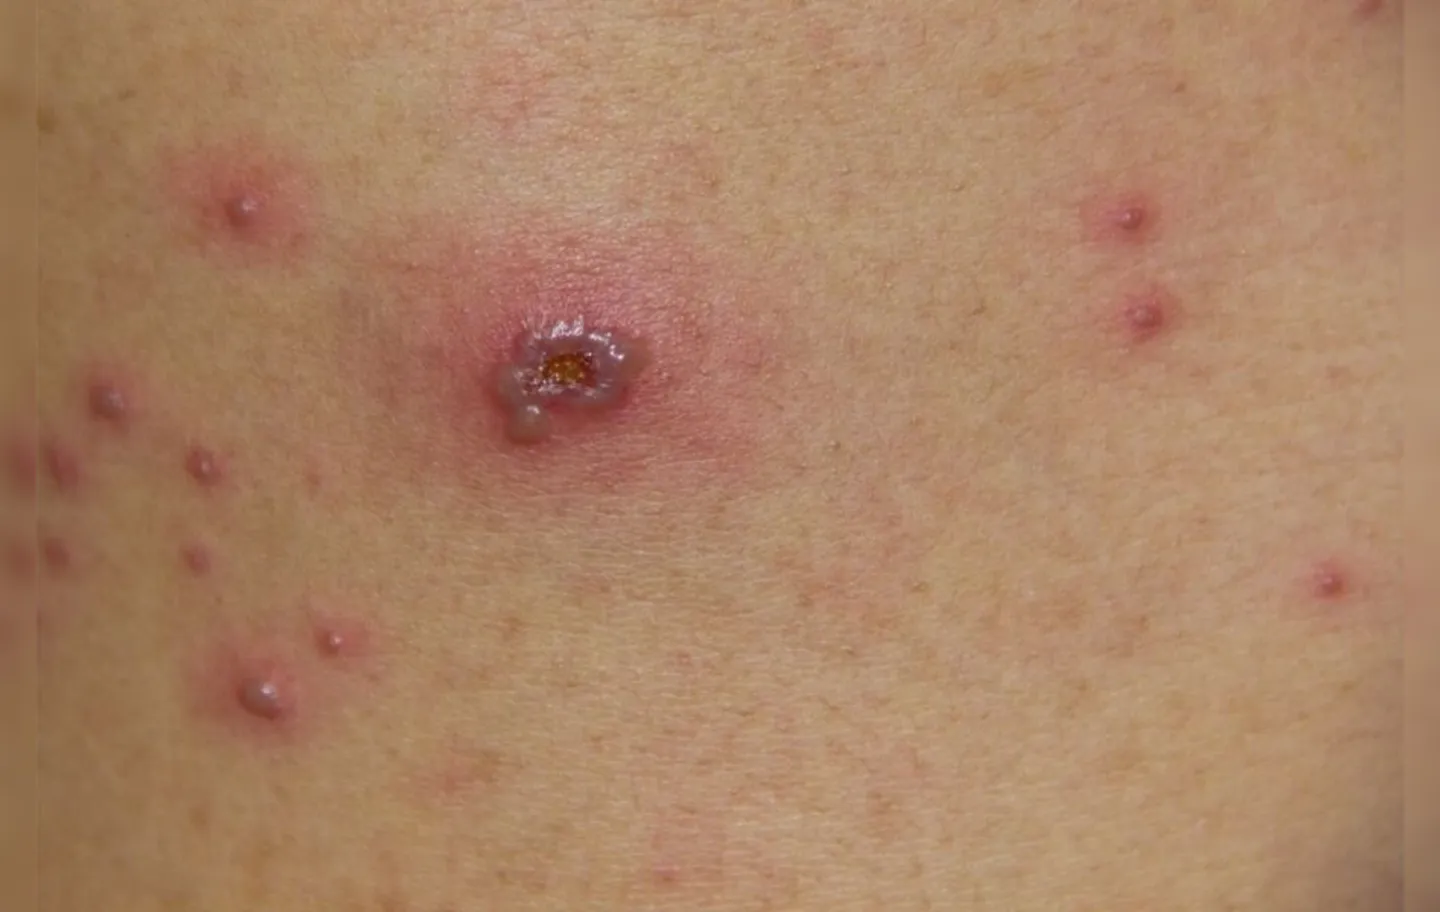 Doença que costuma produzir irritações na pele, como erupções cutâneas, a varíola assusta